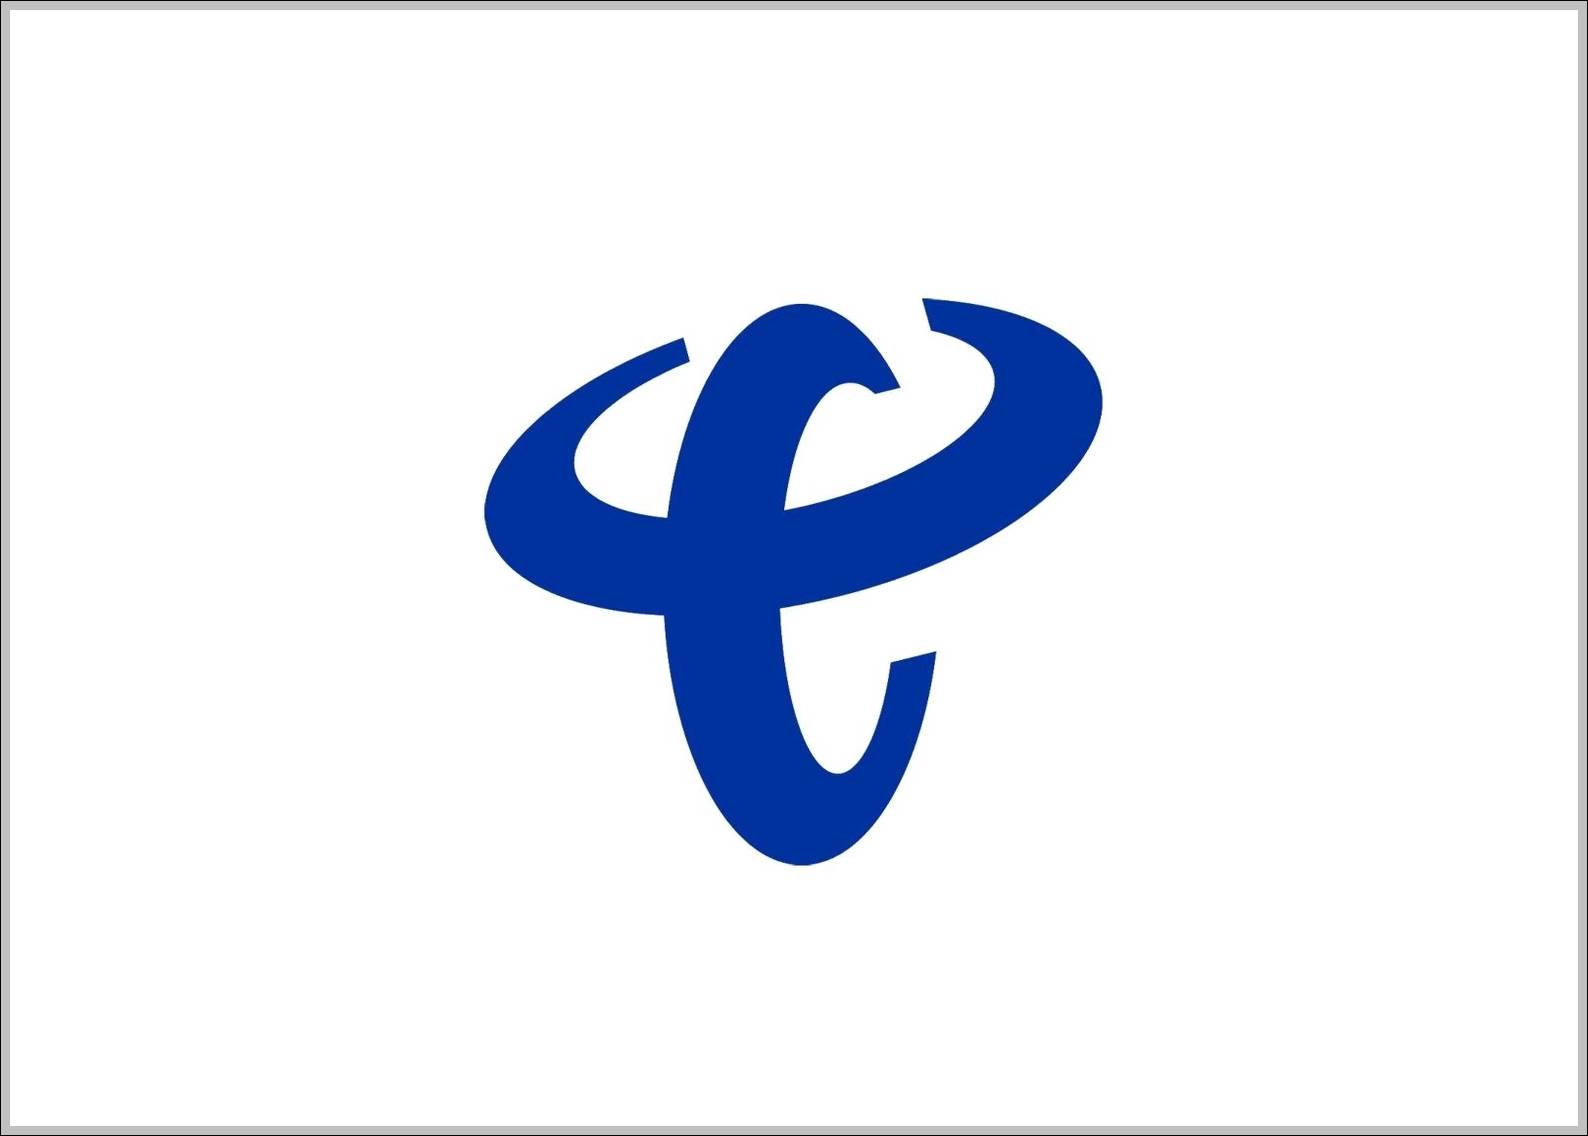 China Telecom 0 1 logo